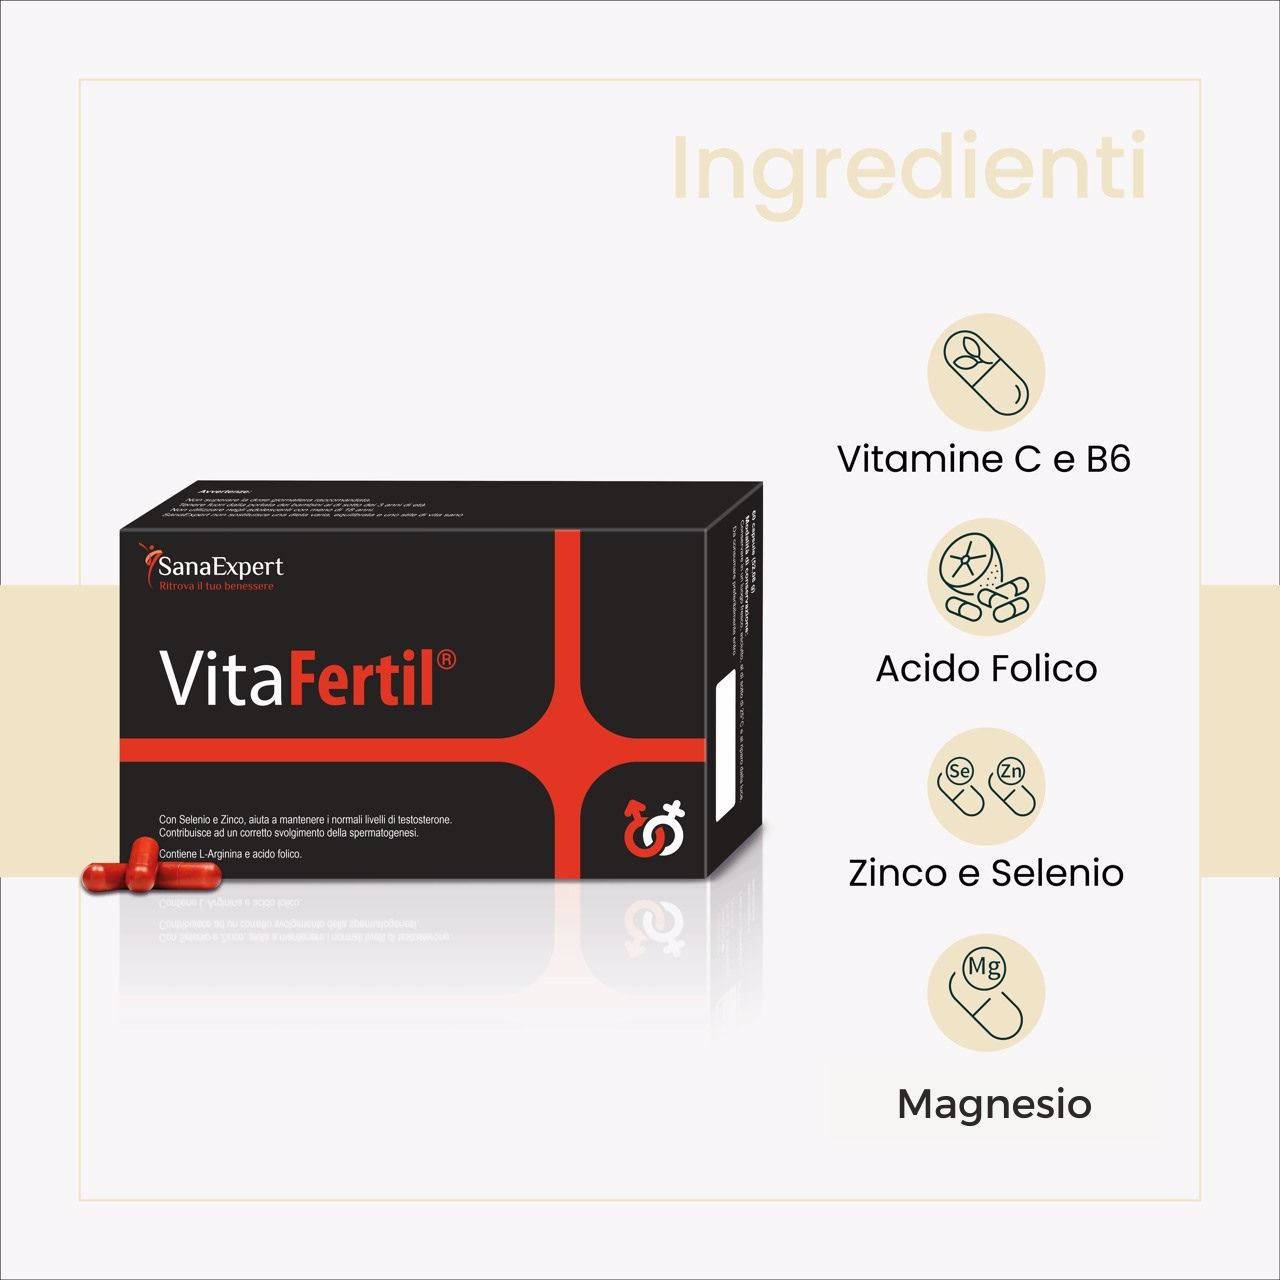 Pack 2 SanaExpert VitaFertil ingredienti naturali, vegani, senza glutine, senza lattosio con vitamine C e B6, acido folico, zinco, selenio e magnesio